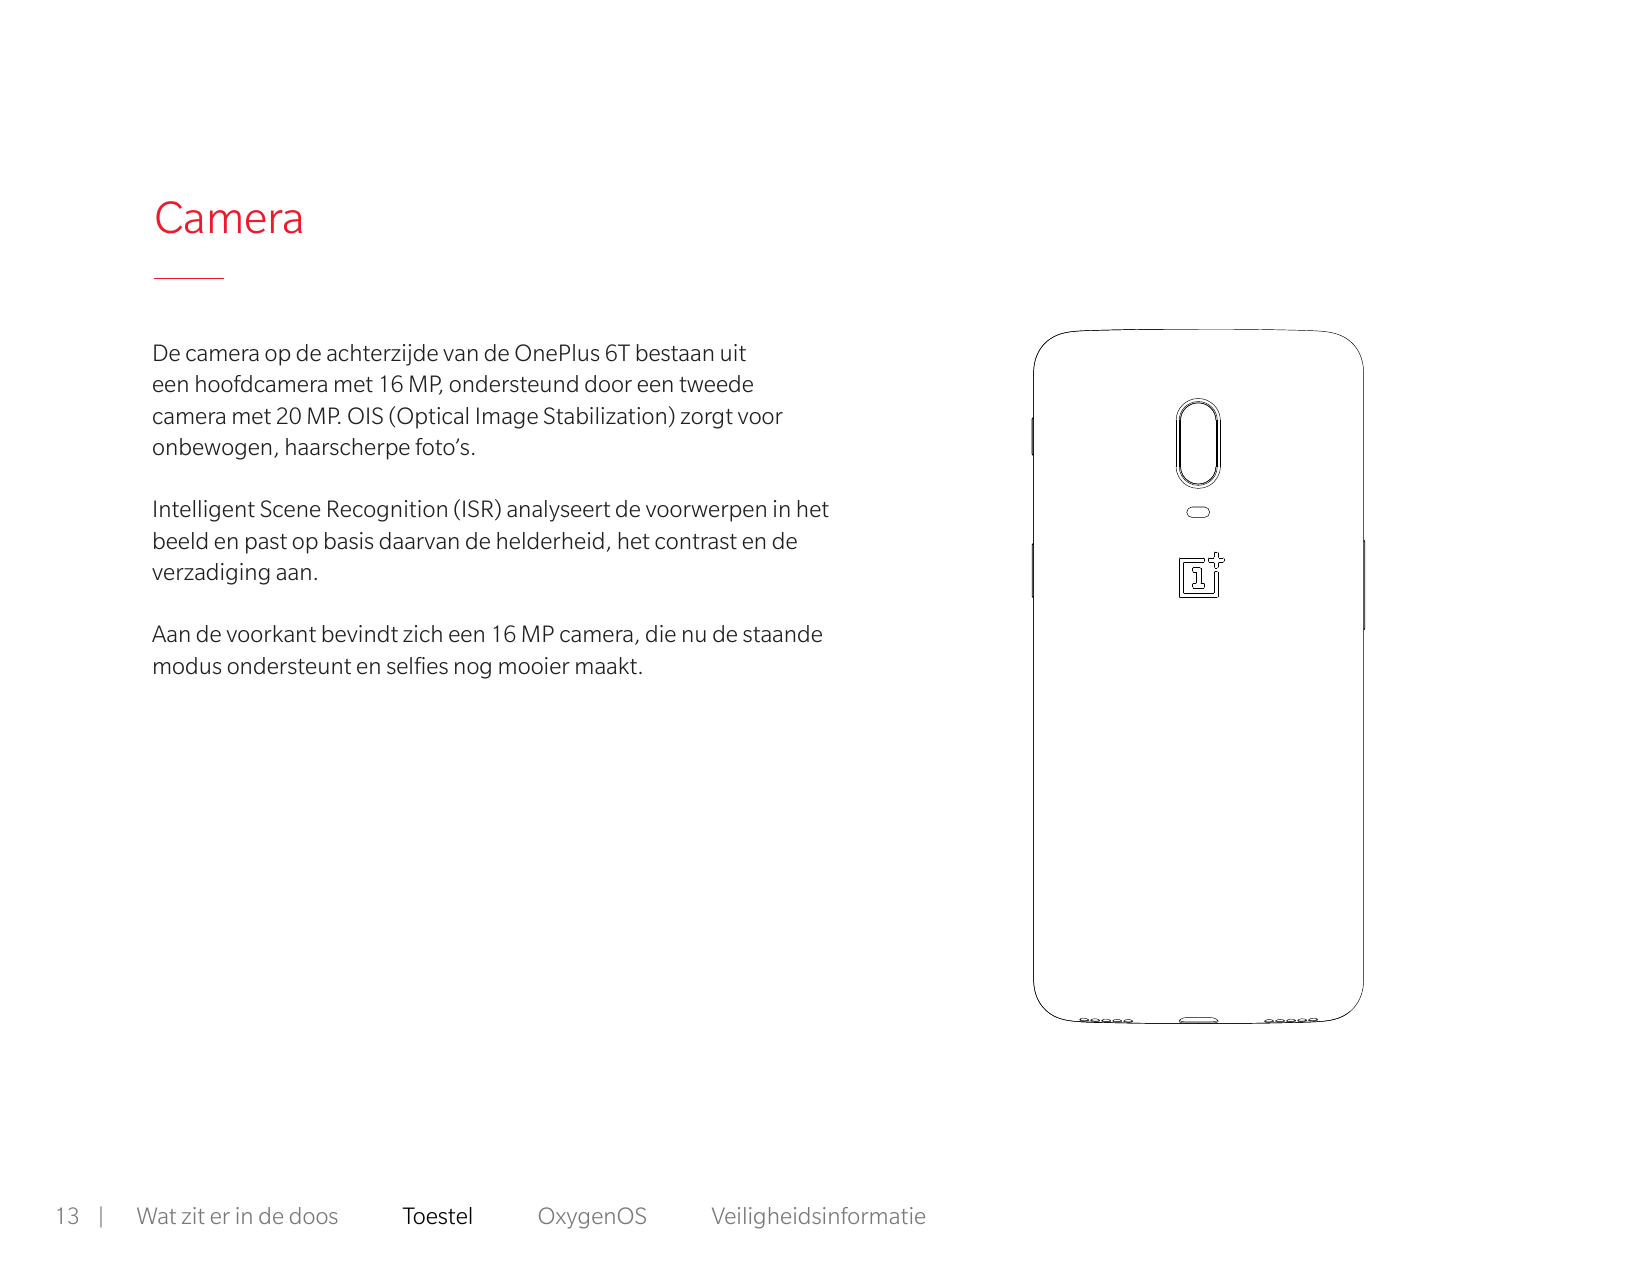 CameraDe camera op de achterzijde van de OnePlus 6T bestaan uiteen hoofdcamera met 16 MP, ondersteund door een tweedecamera met 